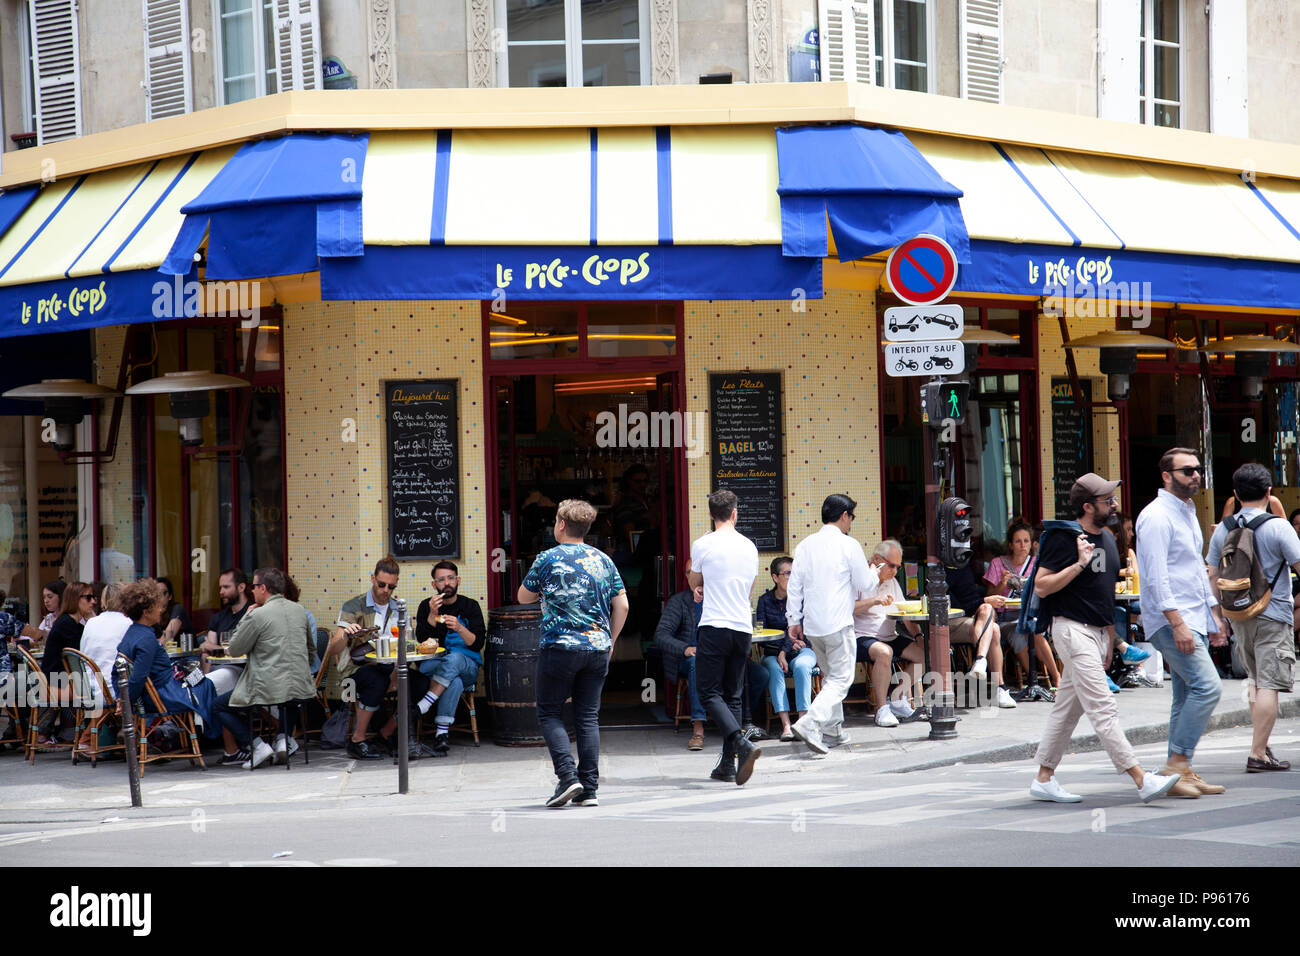 Restaurant Le Pick Clops on Rue du Roi de Sicile in Paris, france Stock ...